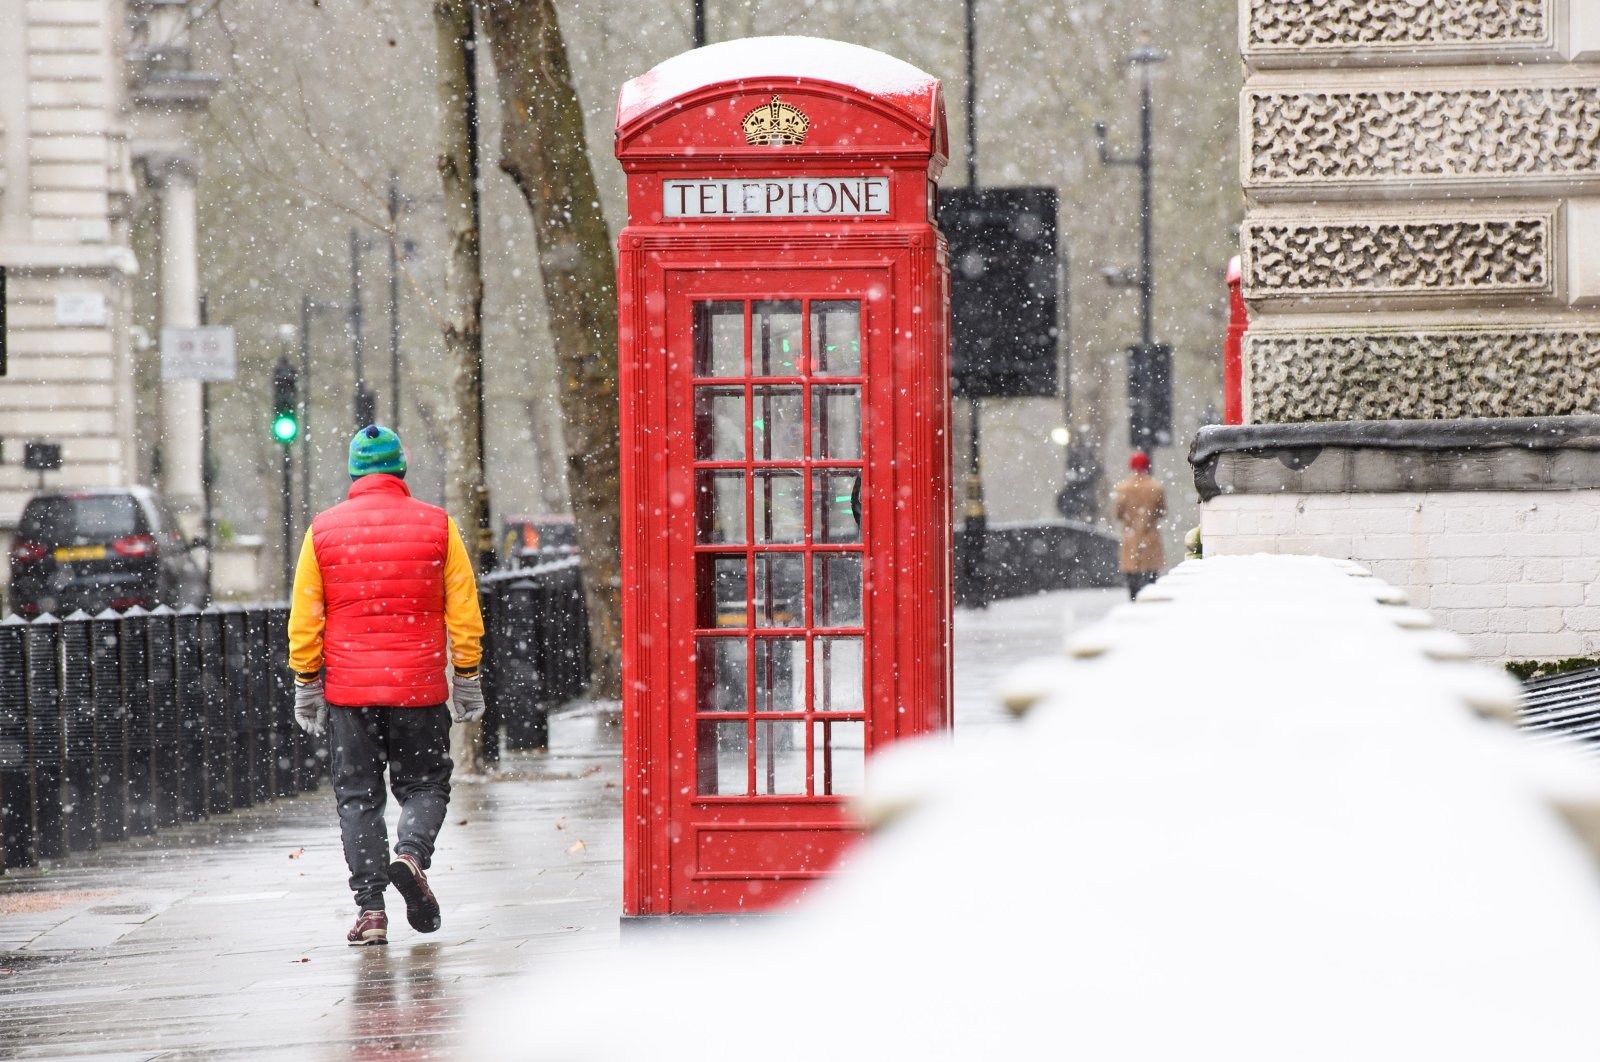 Kotak telepon Inggris merah ikonik untuk dilindungi dengan aturan baru